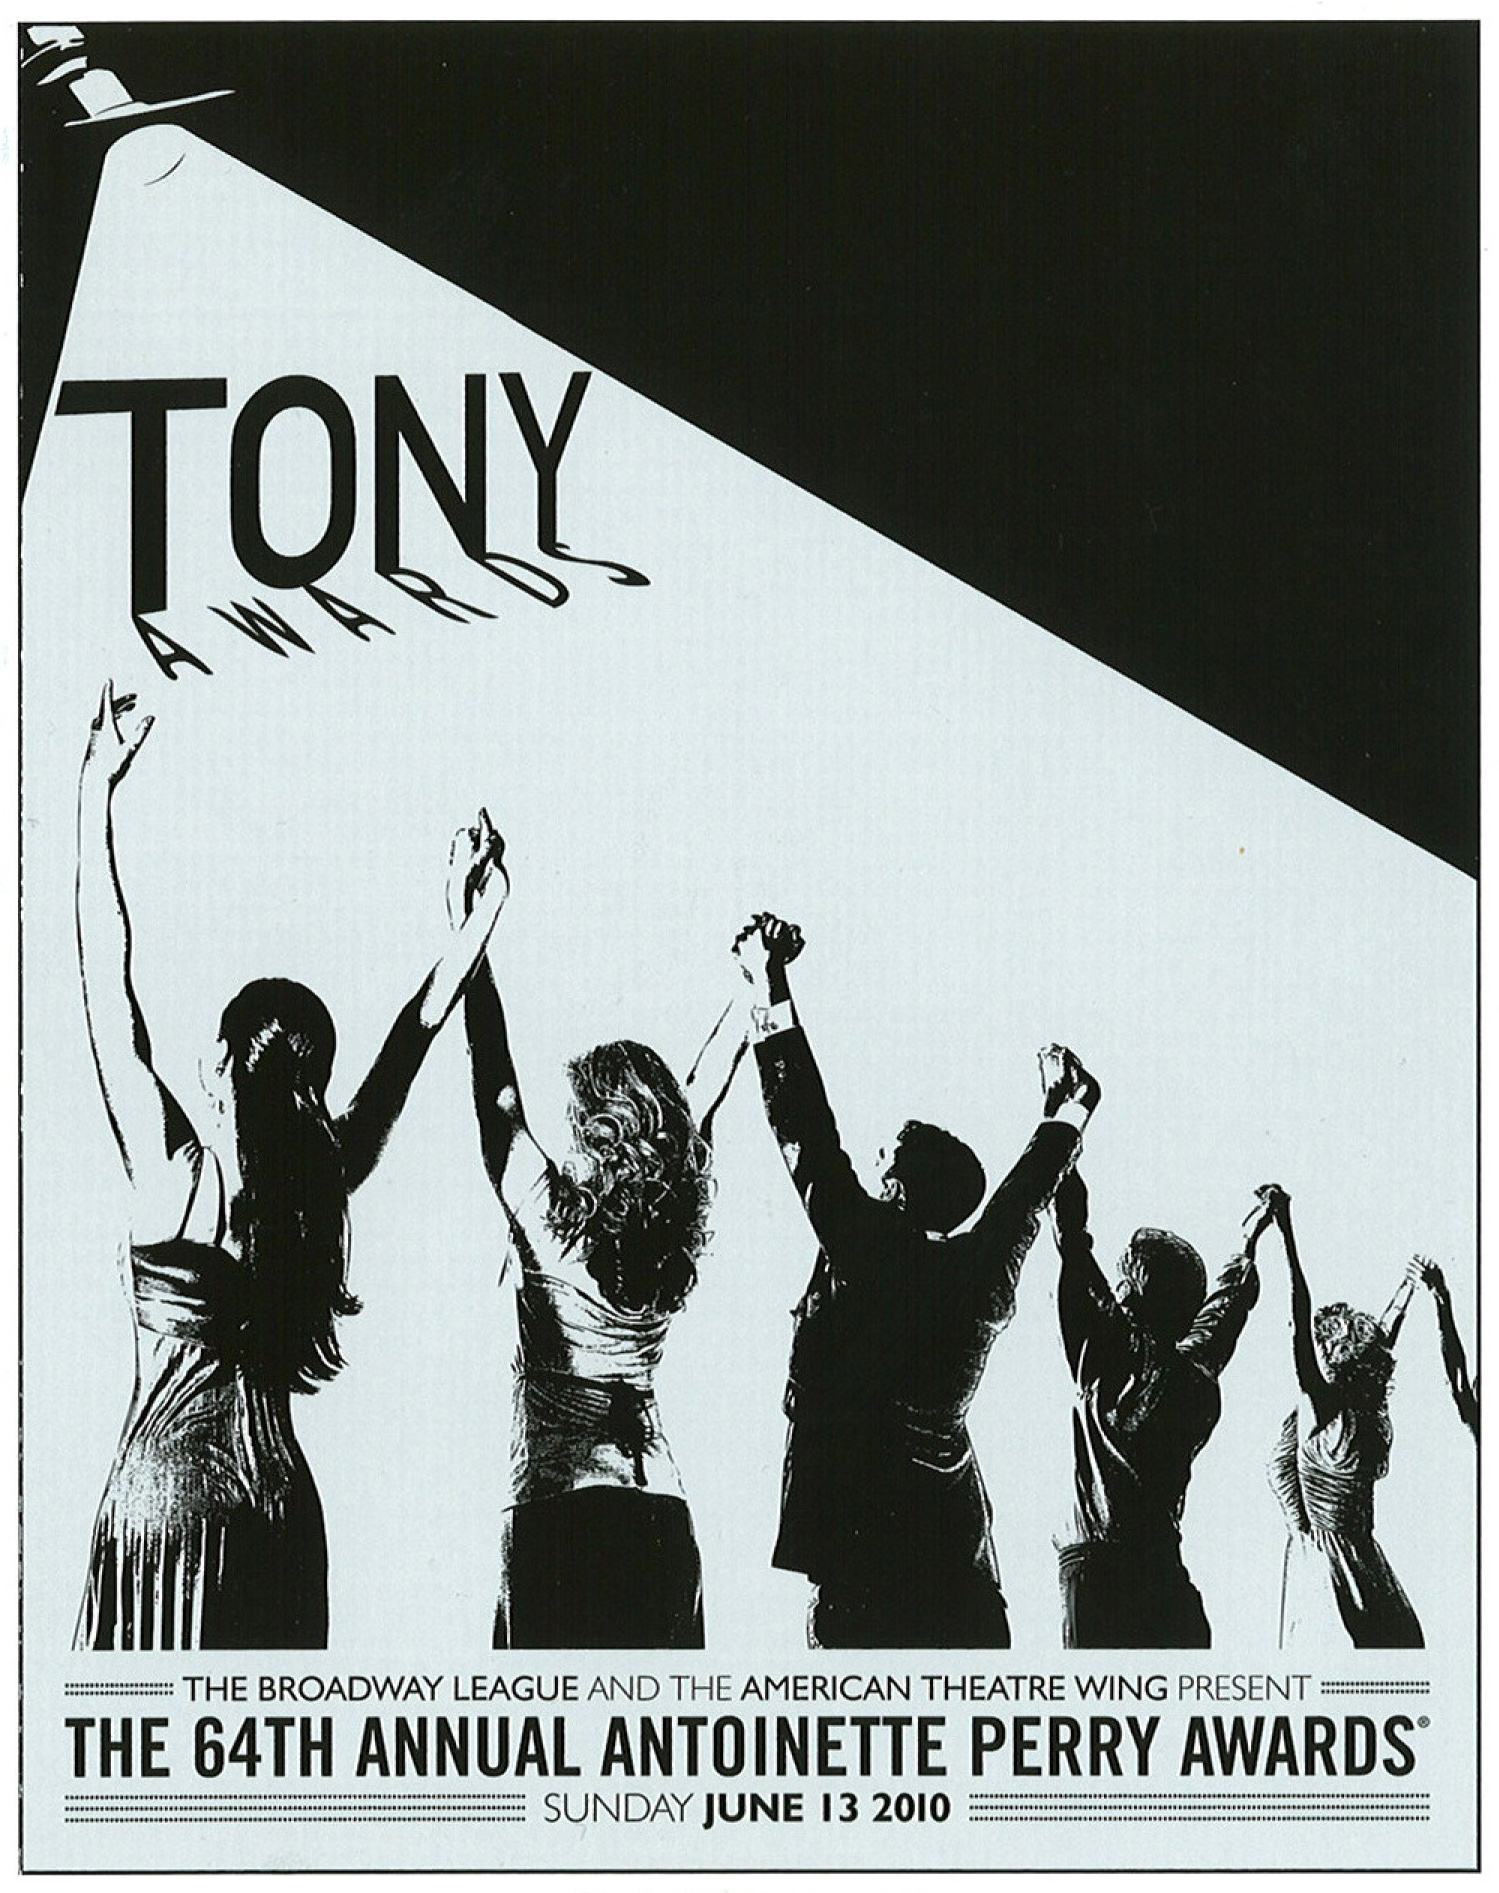 The 64th Annual Tony Awards